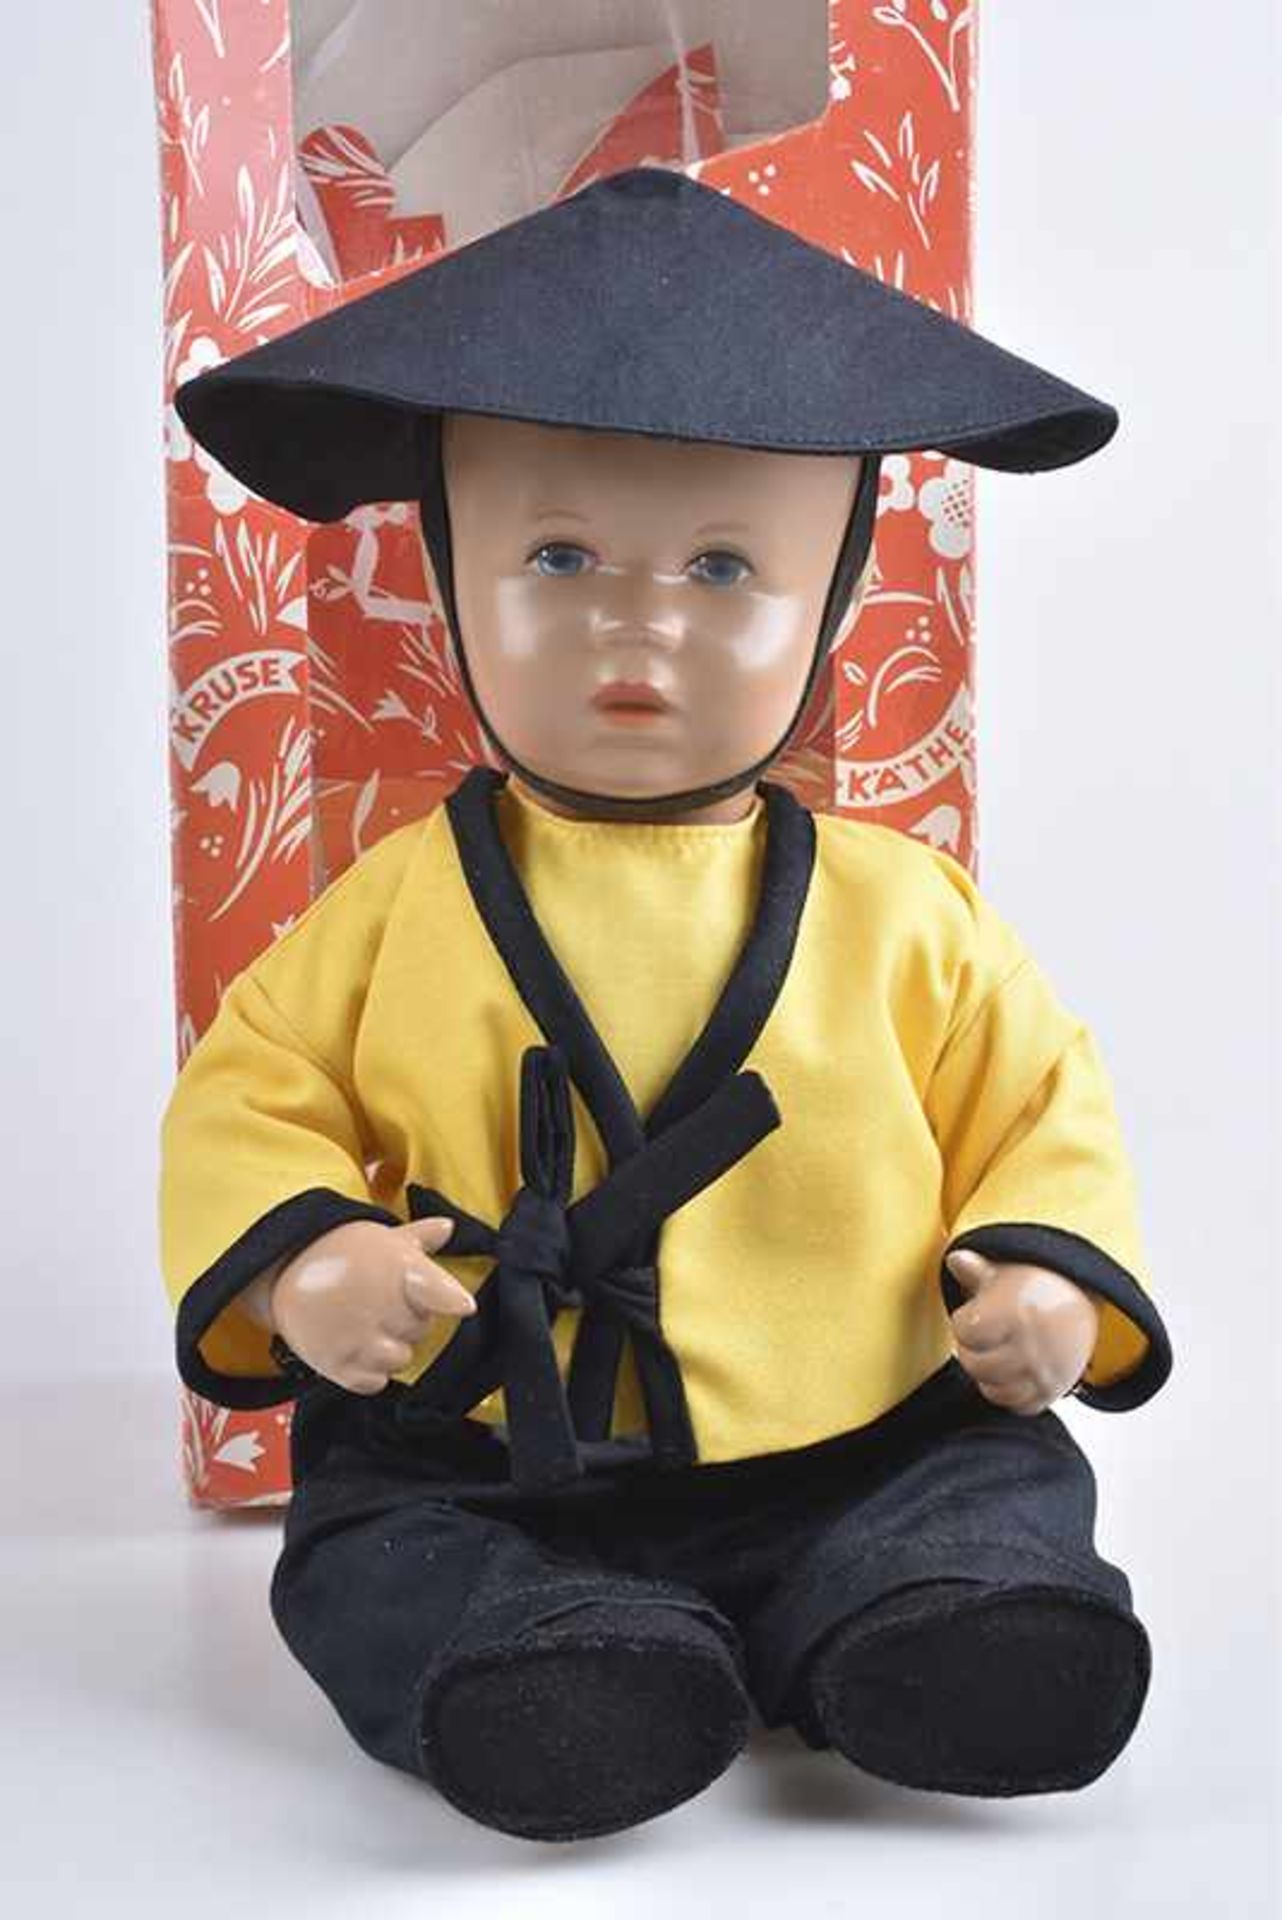 KÄTHE KRUSE Puppe "Li" Badebaby, gemalte blaue Augen, Körper mit angewinkelten Armen und Beinen,